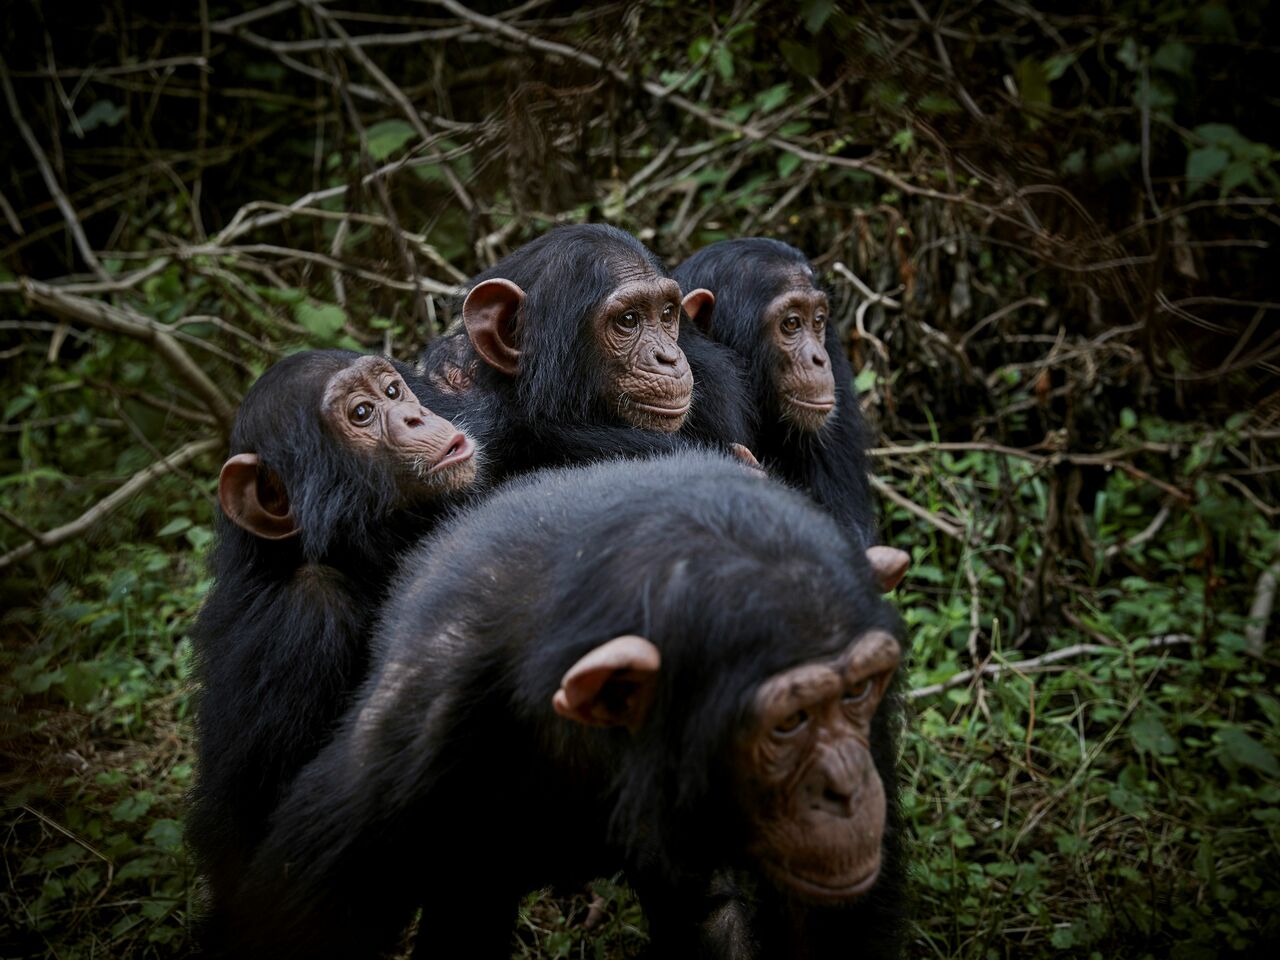 Los chimpancés no saben automáticamente qué hacer cuando se encuentran con nueces y piedras, sino que necesitan aprender de otros compañeros comportamientos complejos -como partir una nuez-, según un nuevo estudio. (ARCHIVO) 